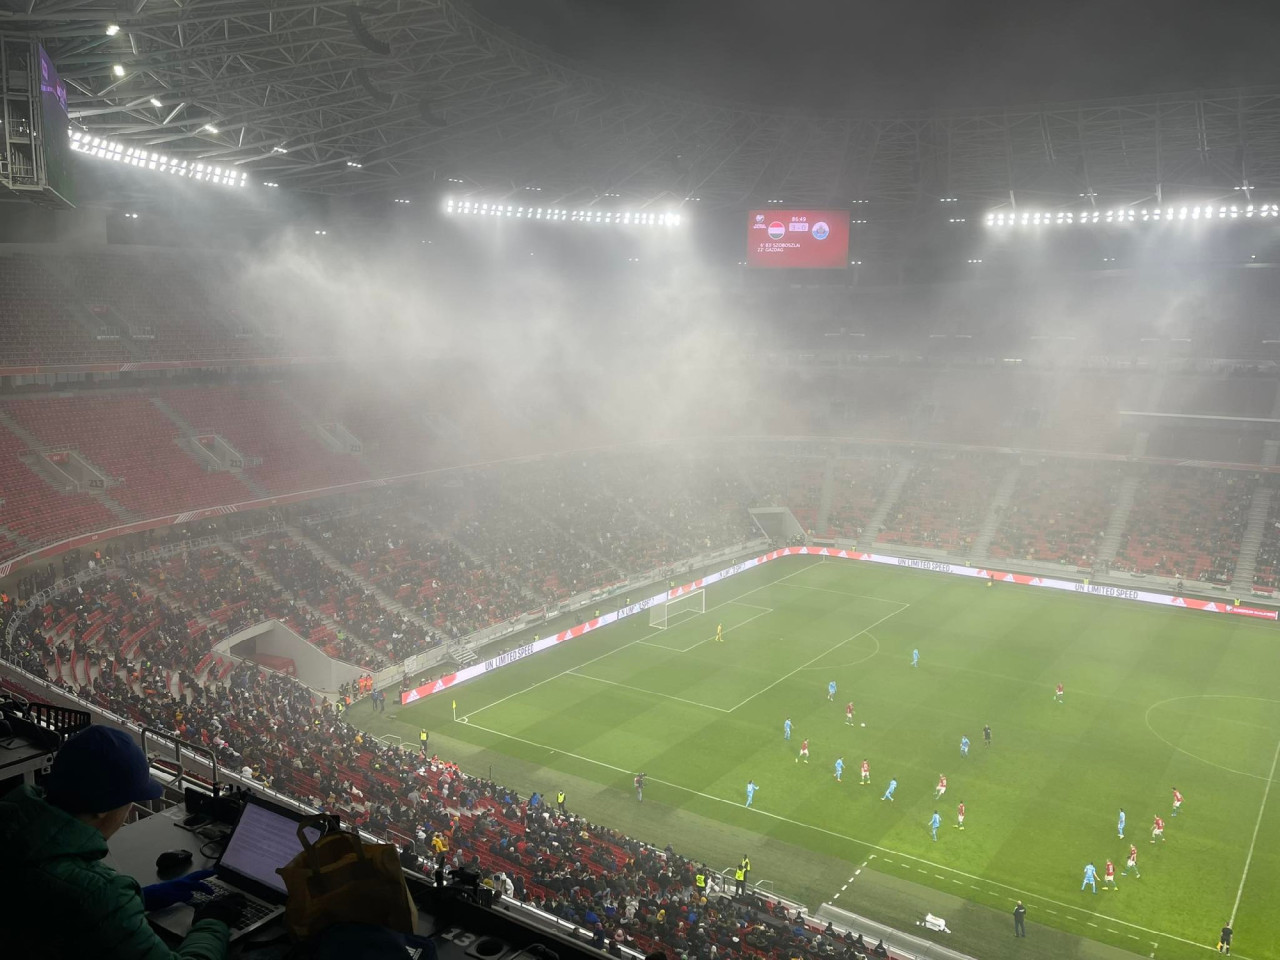 A Magyarország-San Marino mérkőzés végére leszállt a köd a Puskás Aréna pályájára. (Fotó: Lukács Csaba/Magyar Hang)